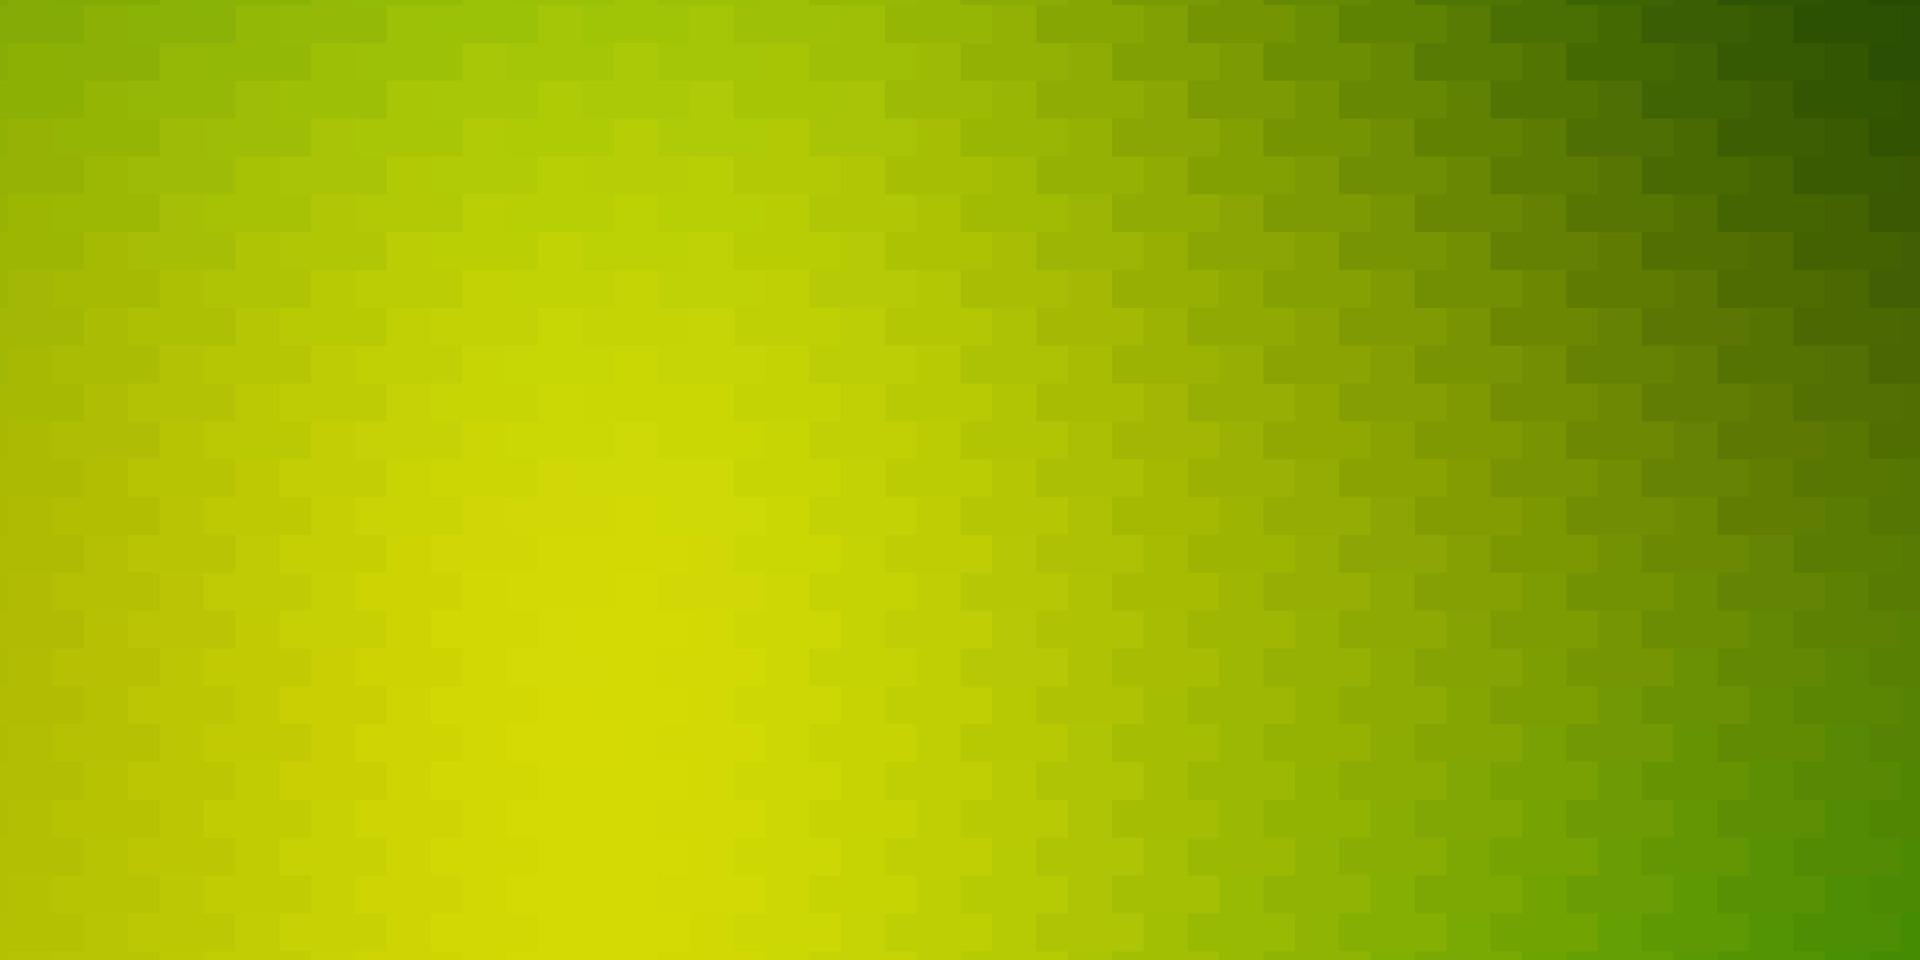 lichtgroene, gele vectorachtergrond met rechthoeken. vector